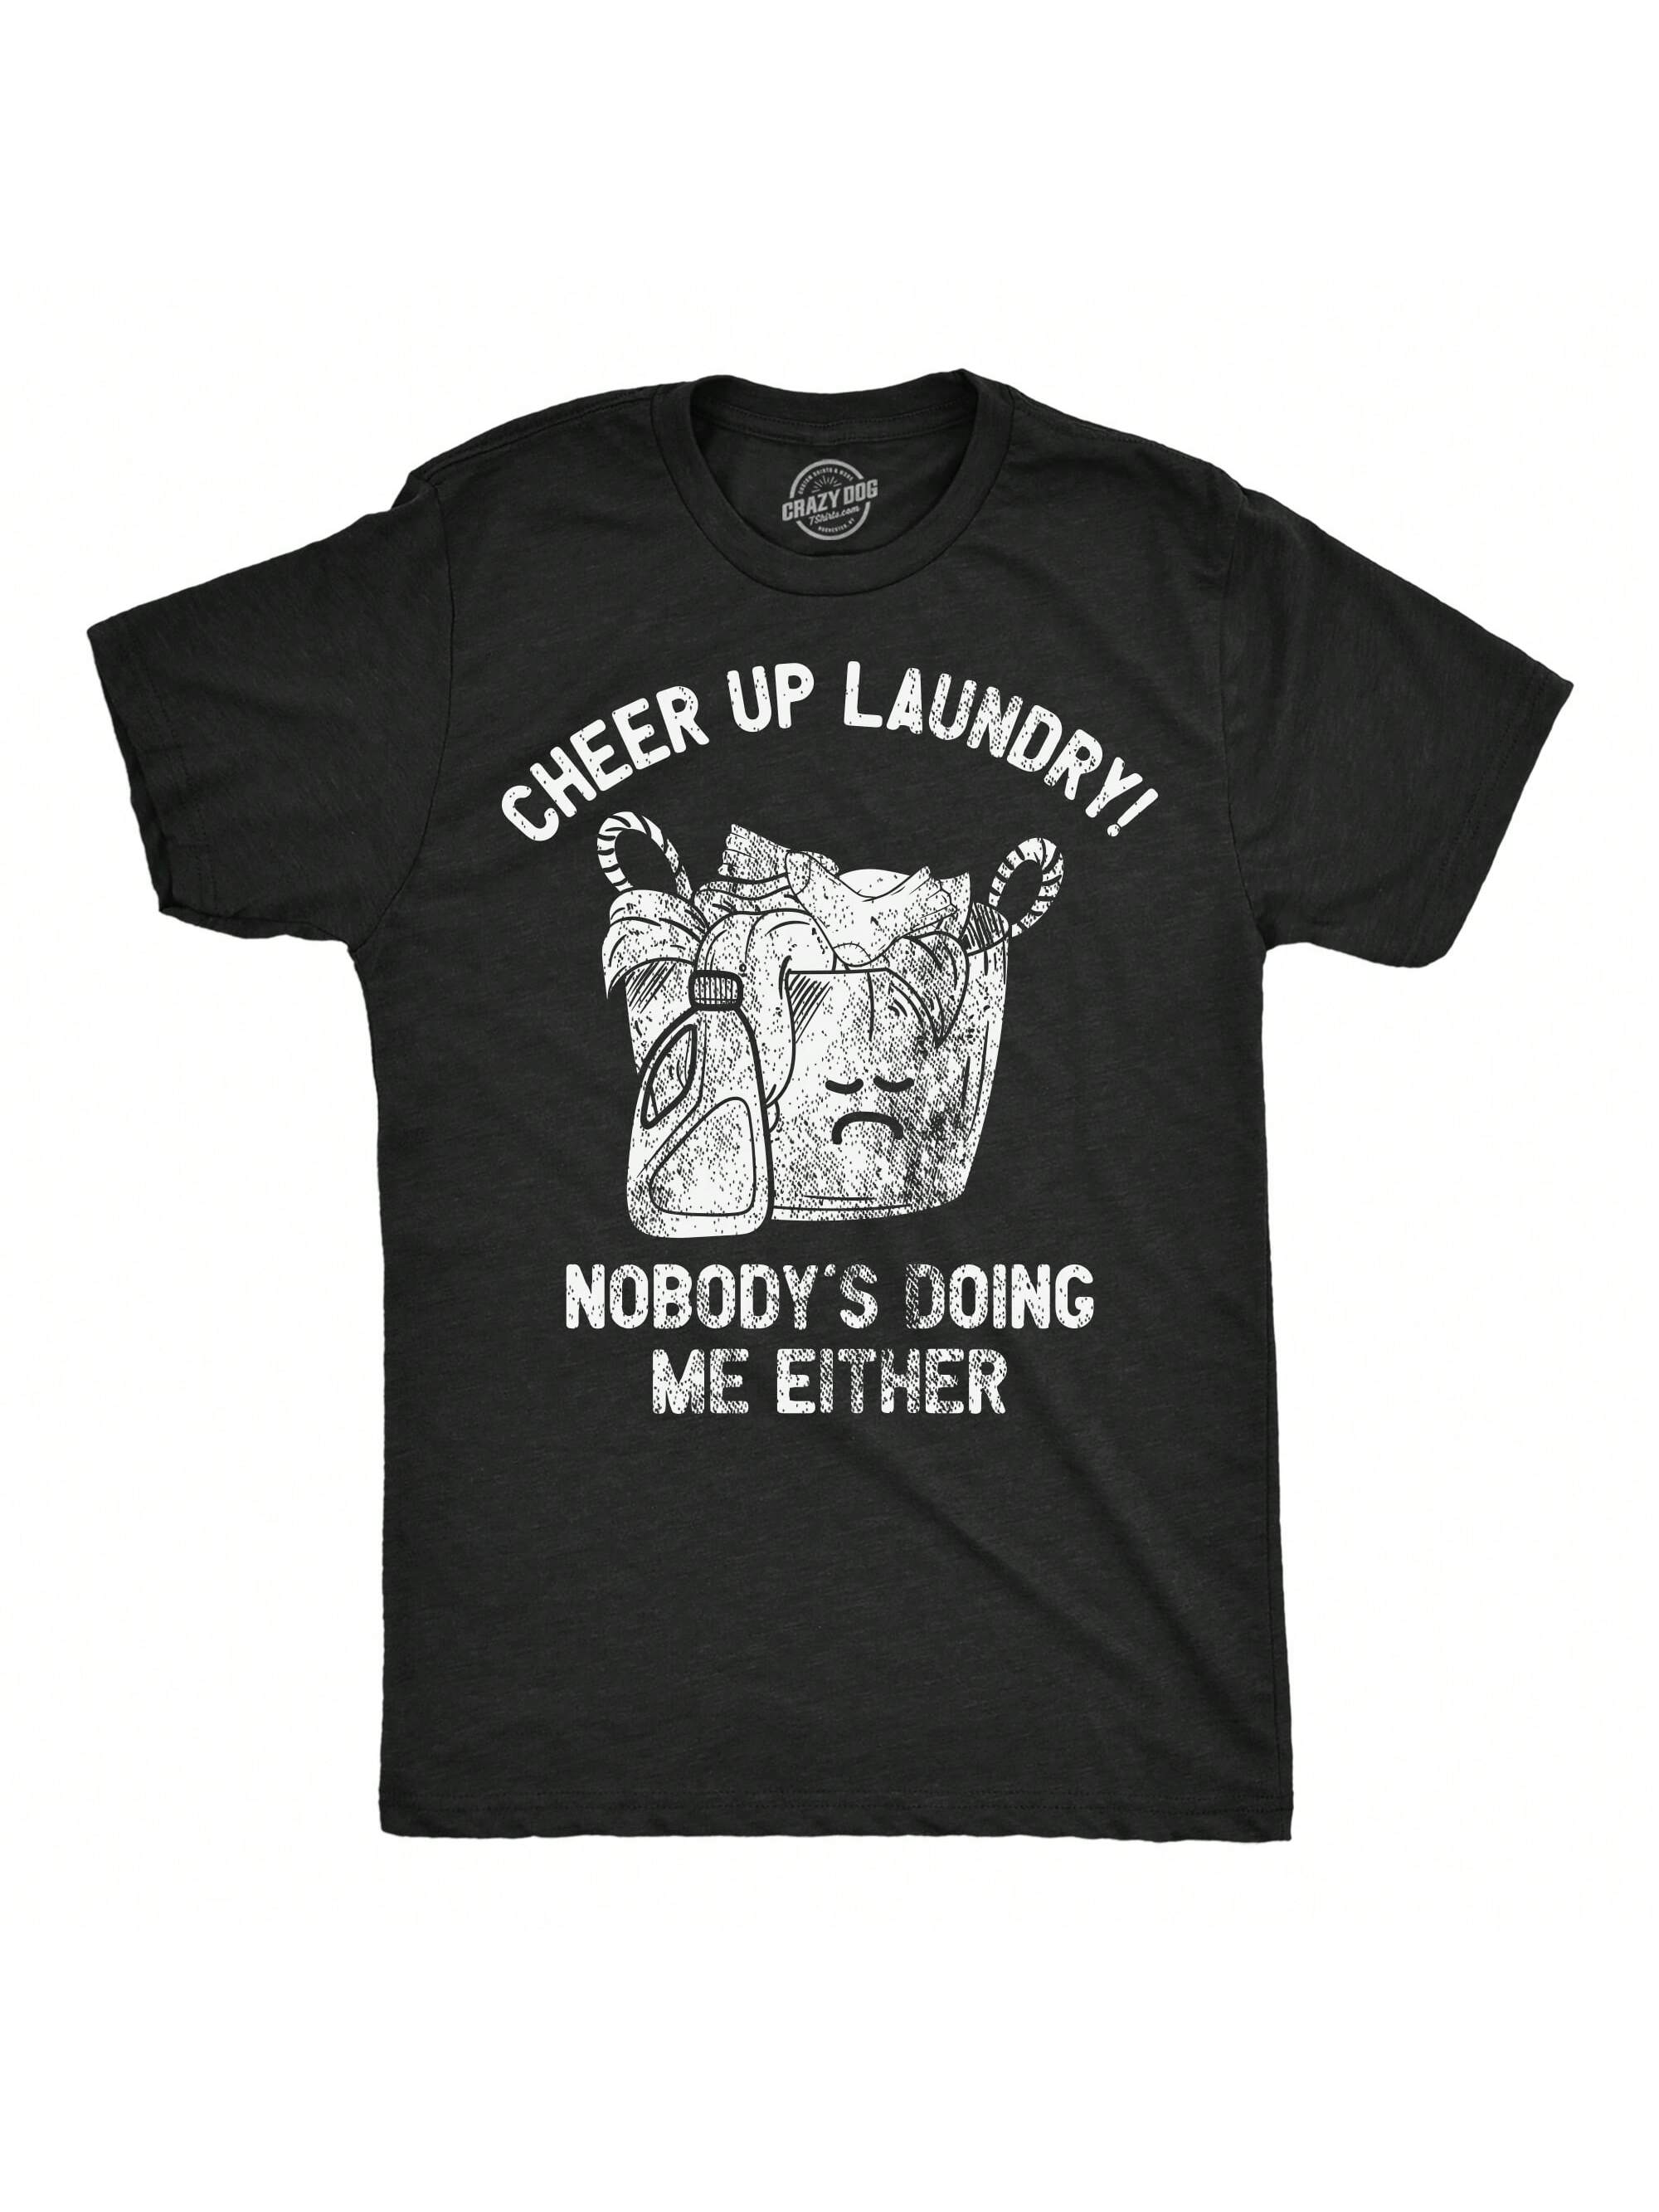 Мужские забавные футболки Cheer Up Laundry Никто не делает меня ни саркастической футболкой для мужчин (Хезер Блэк — Cheer Up Laundry)